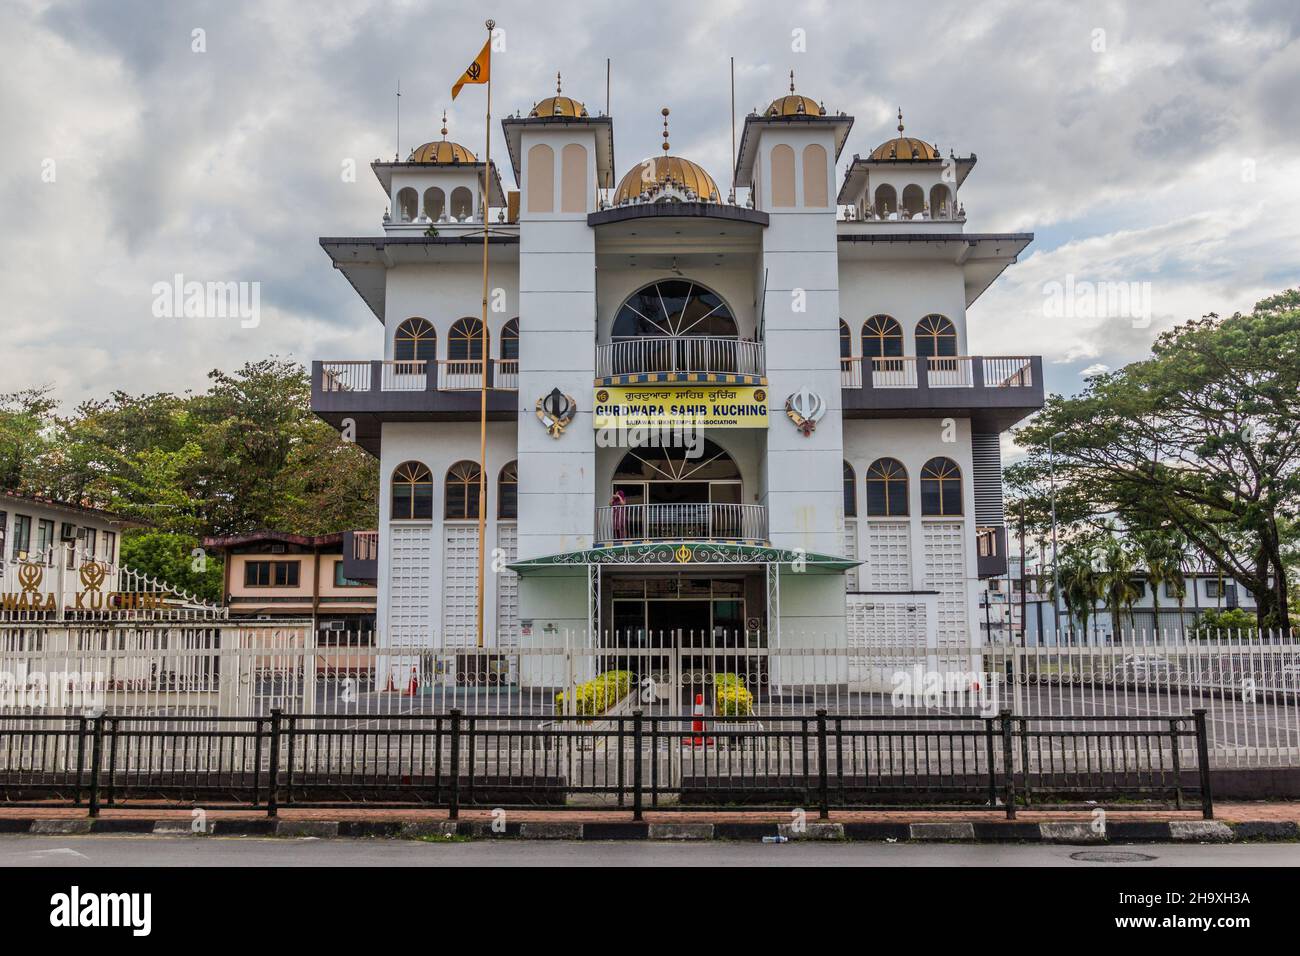 KUCHING, MALAYSIA - MARCH 4, 2018: Gurdwara Sahib in Kuching Malaysia Stock Photo